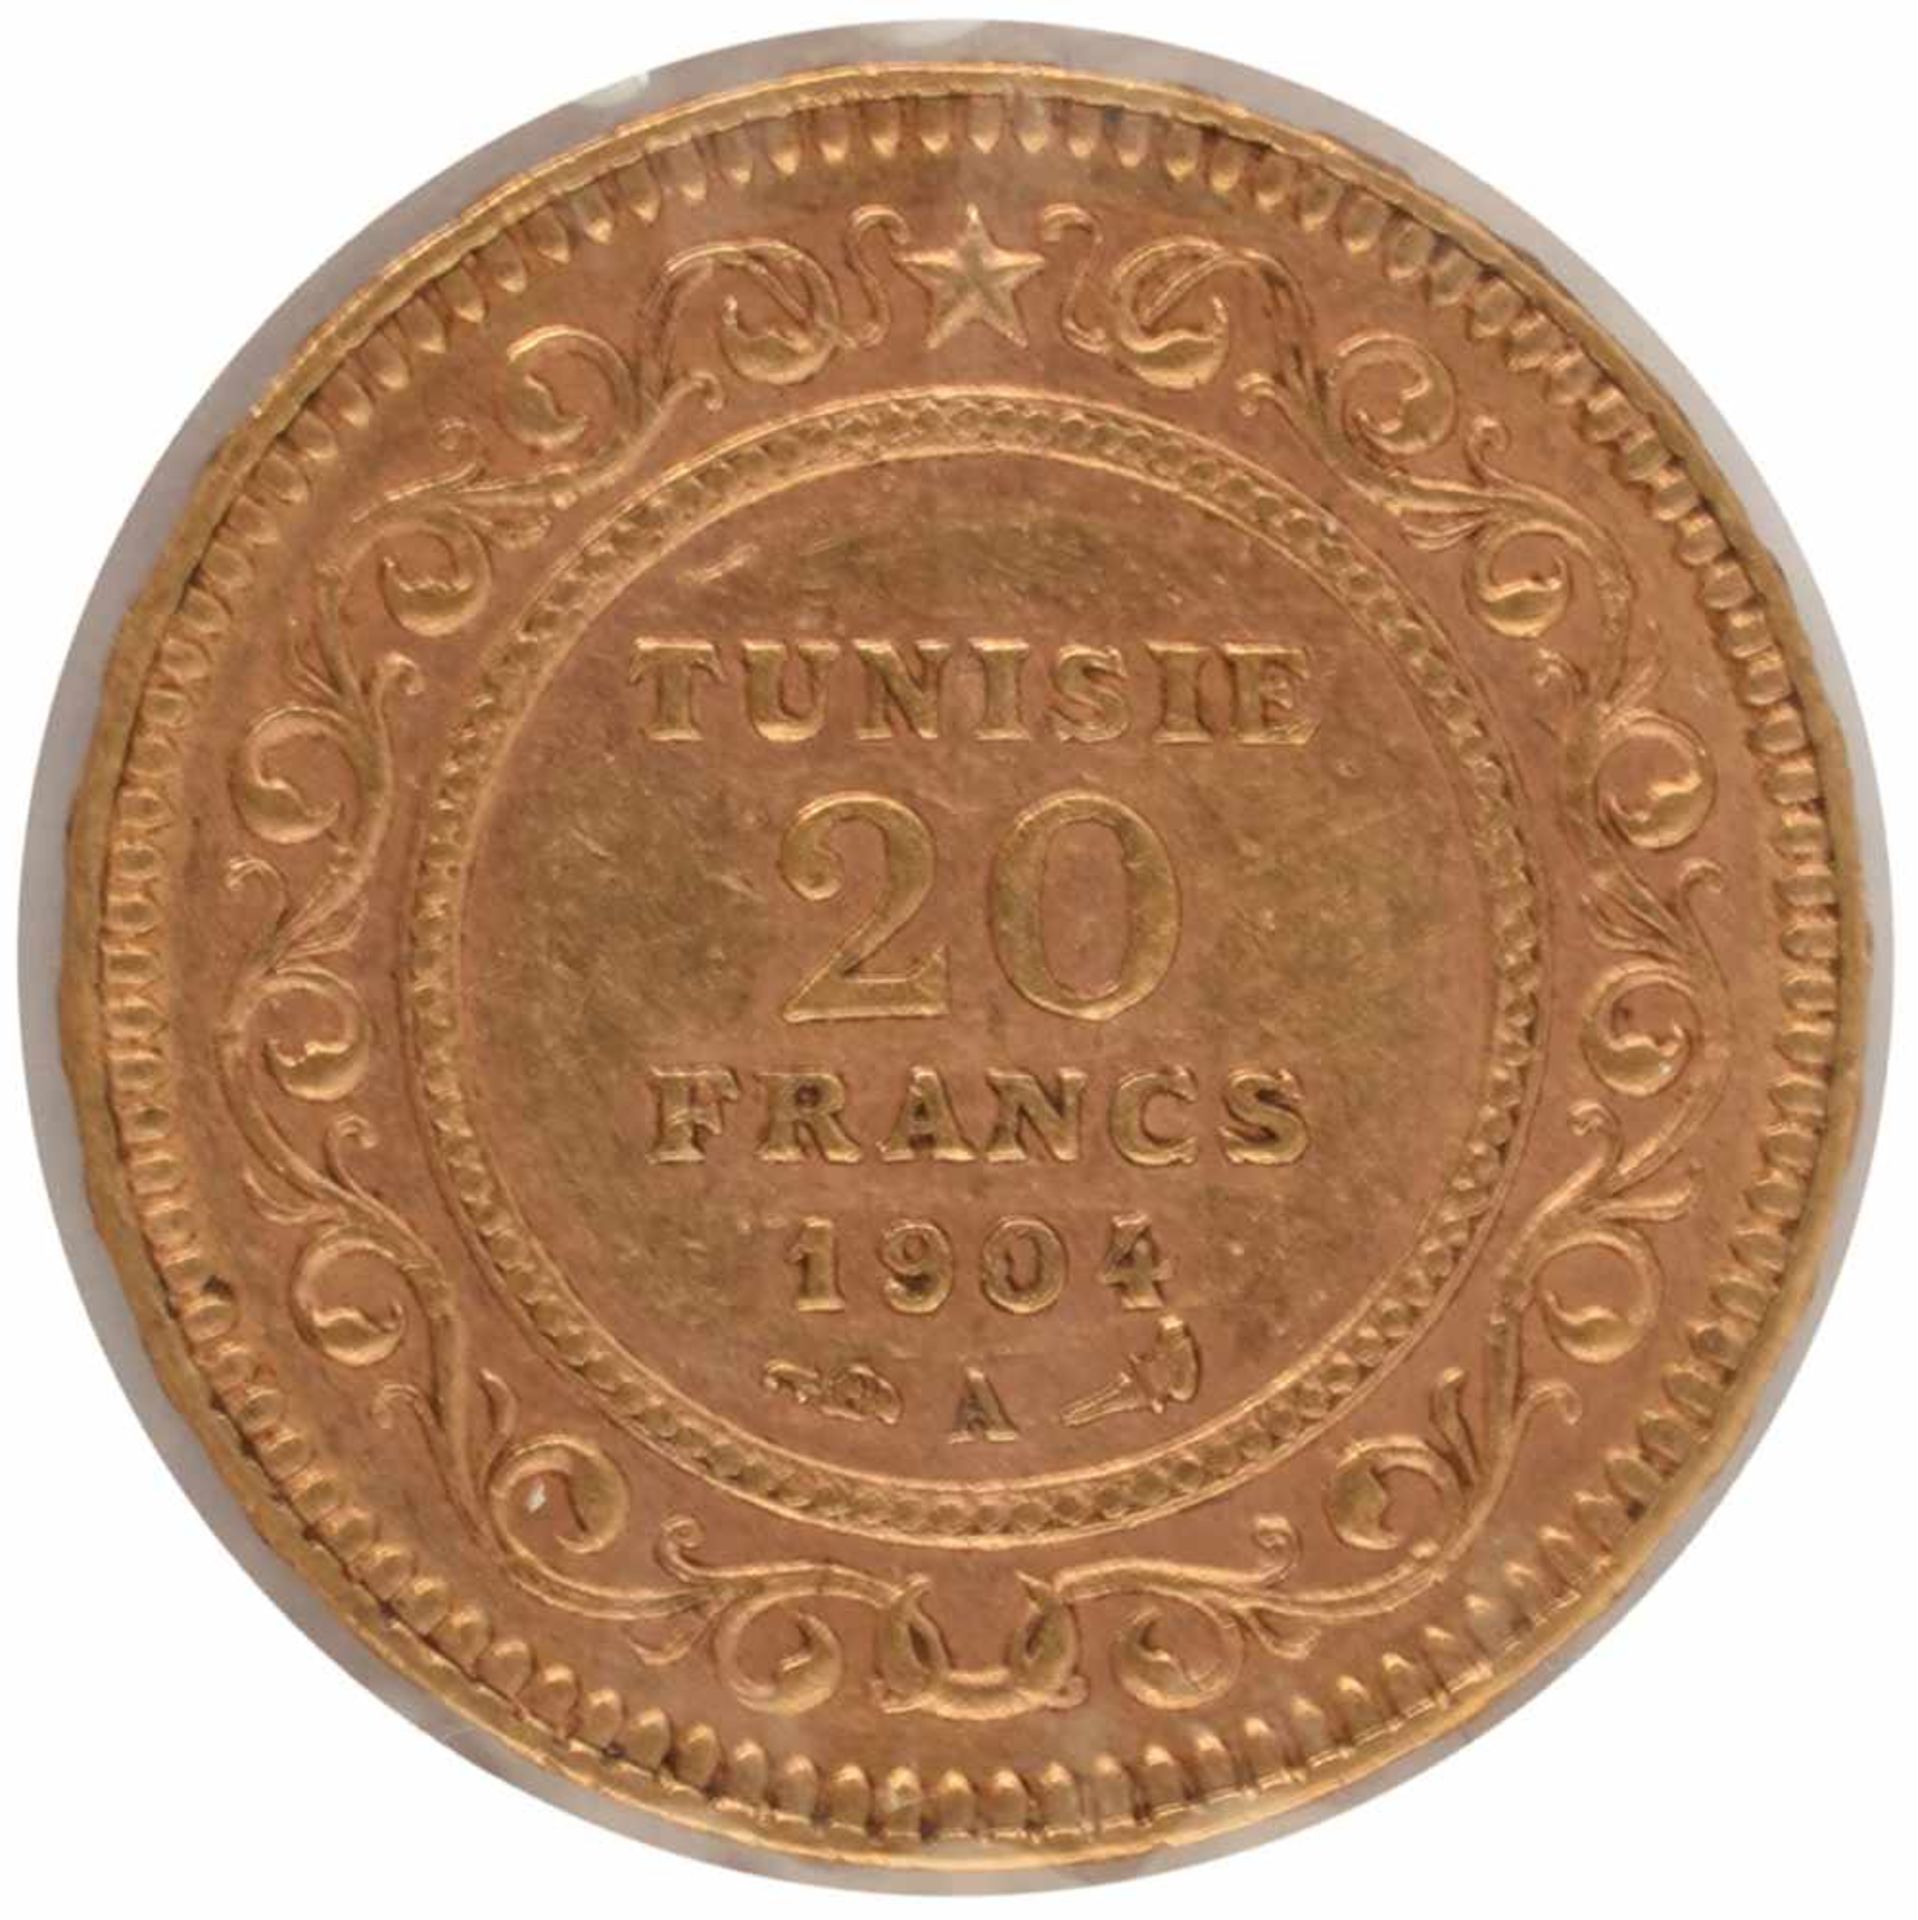 Goldmünze Tunesien 1904 20 Francs in Gold, 900/1000, 6,45 g, av. Wertangabe und Arabesken, rv. - Bild 2 aus 3